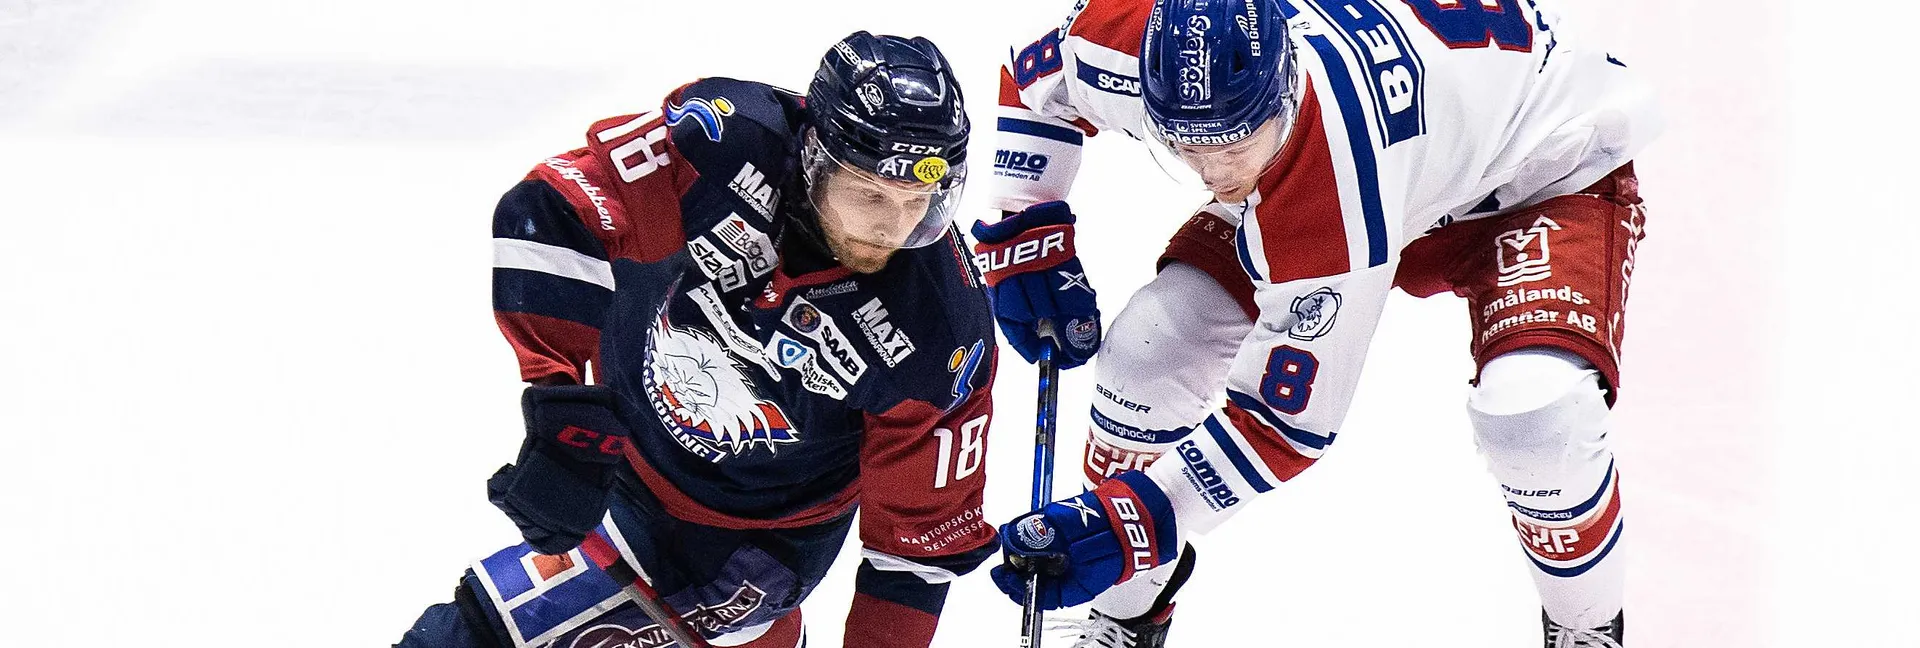 Ishockeymatch mellan Linköping och Oskarshamn i SHL